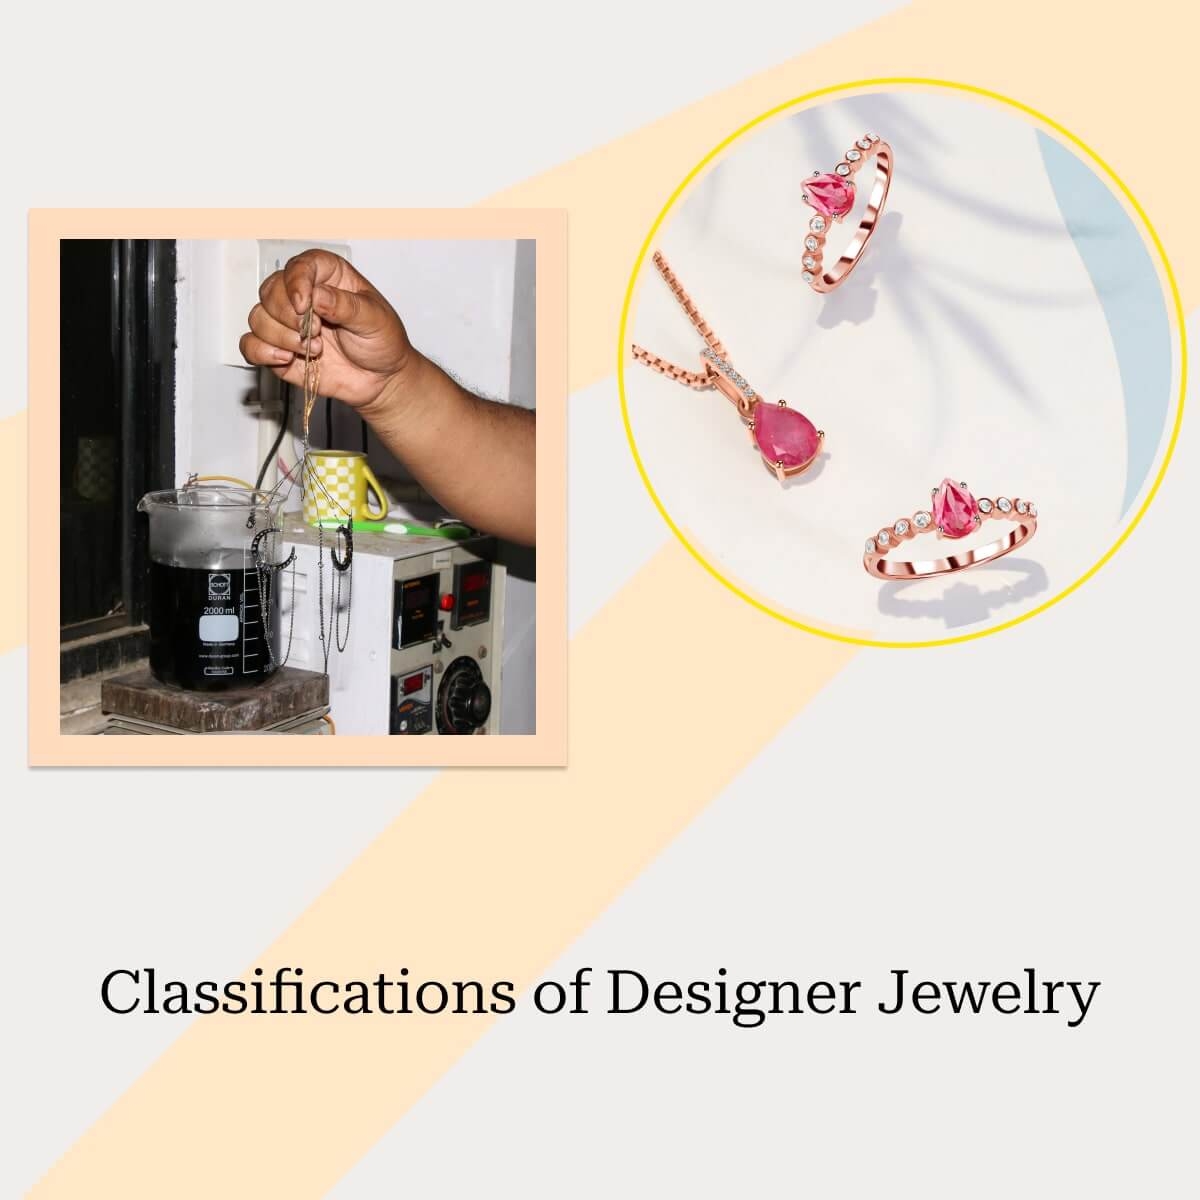 Types of Designer Jewelry